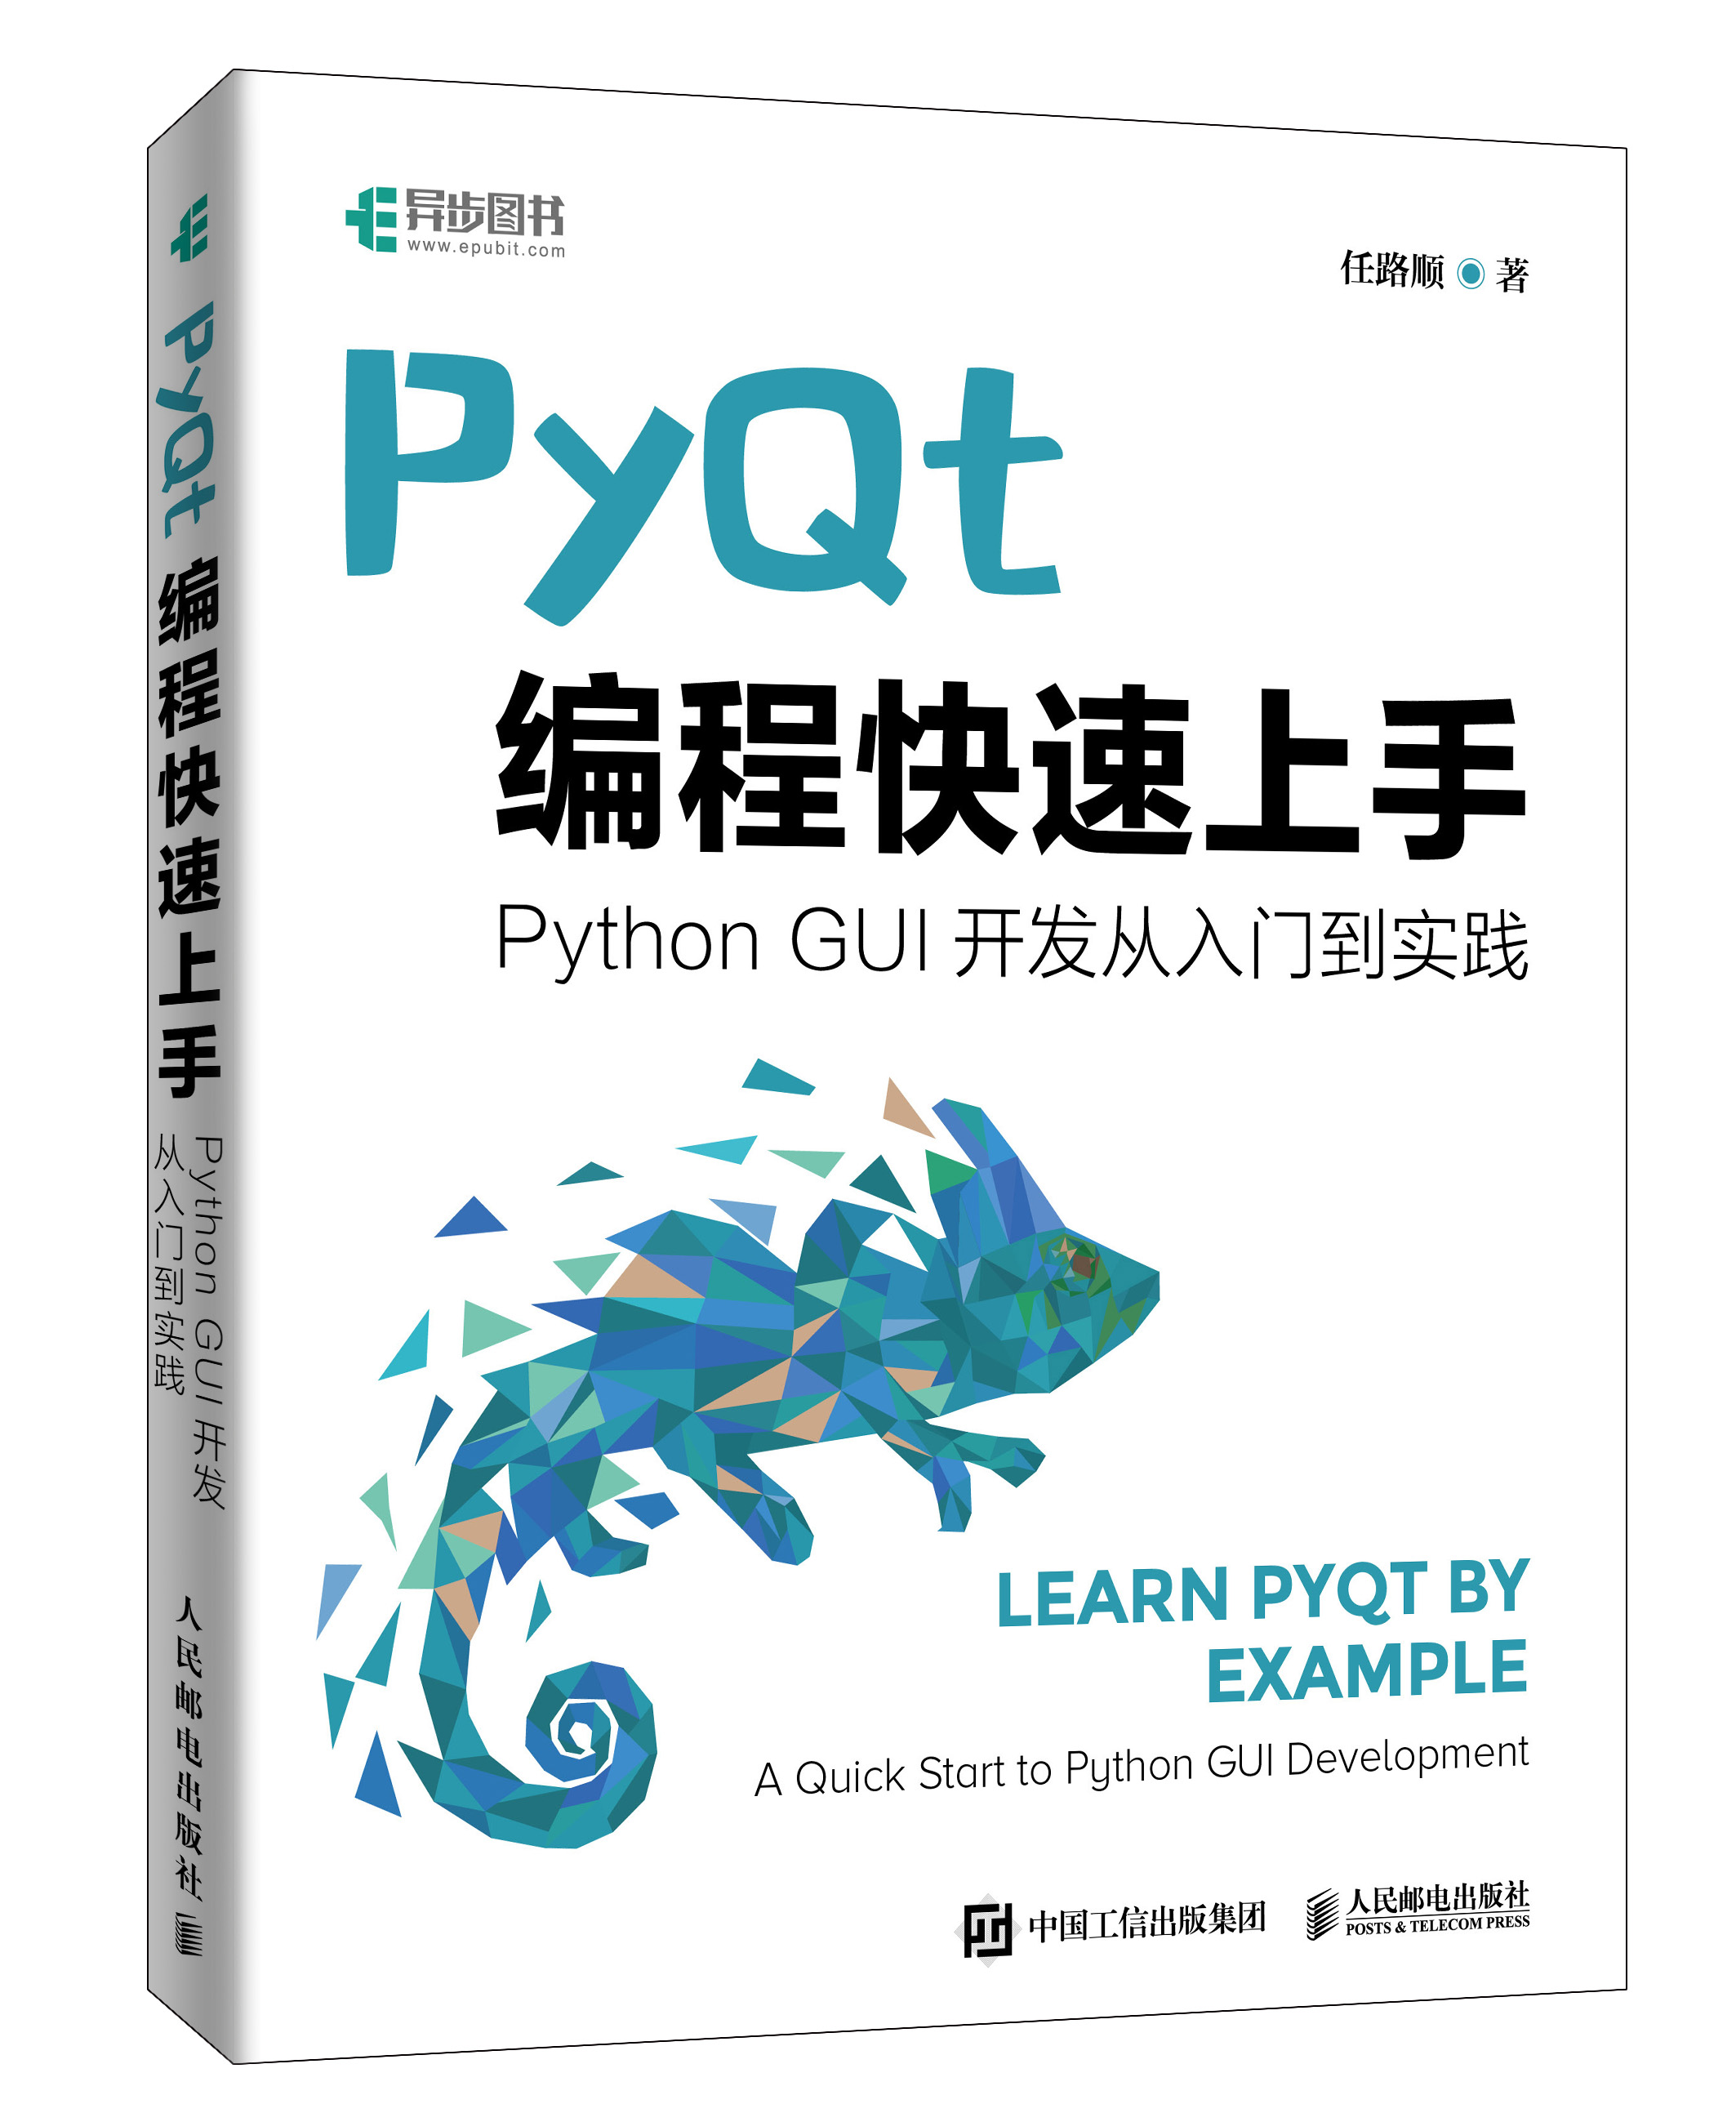 《快速掌握PyQt5》专栏整理成书出版啦！